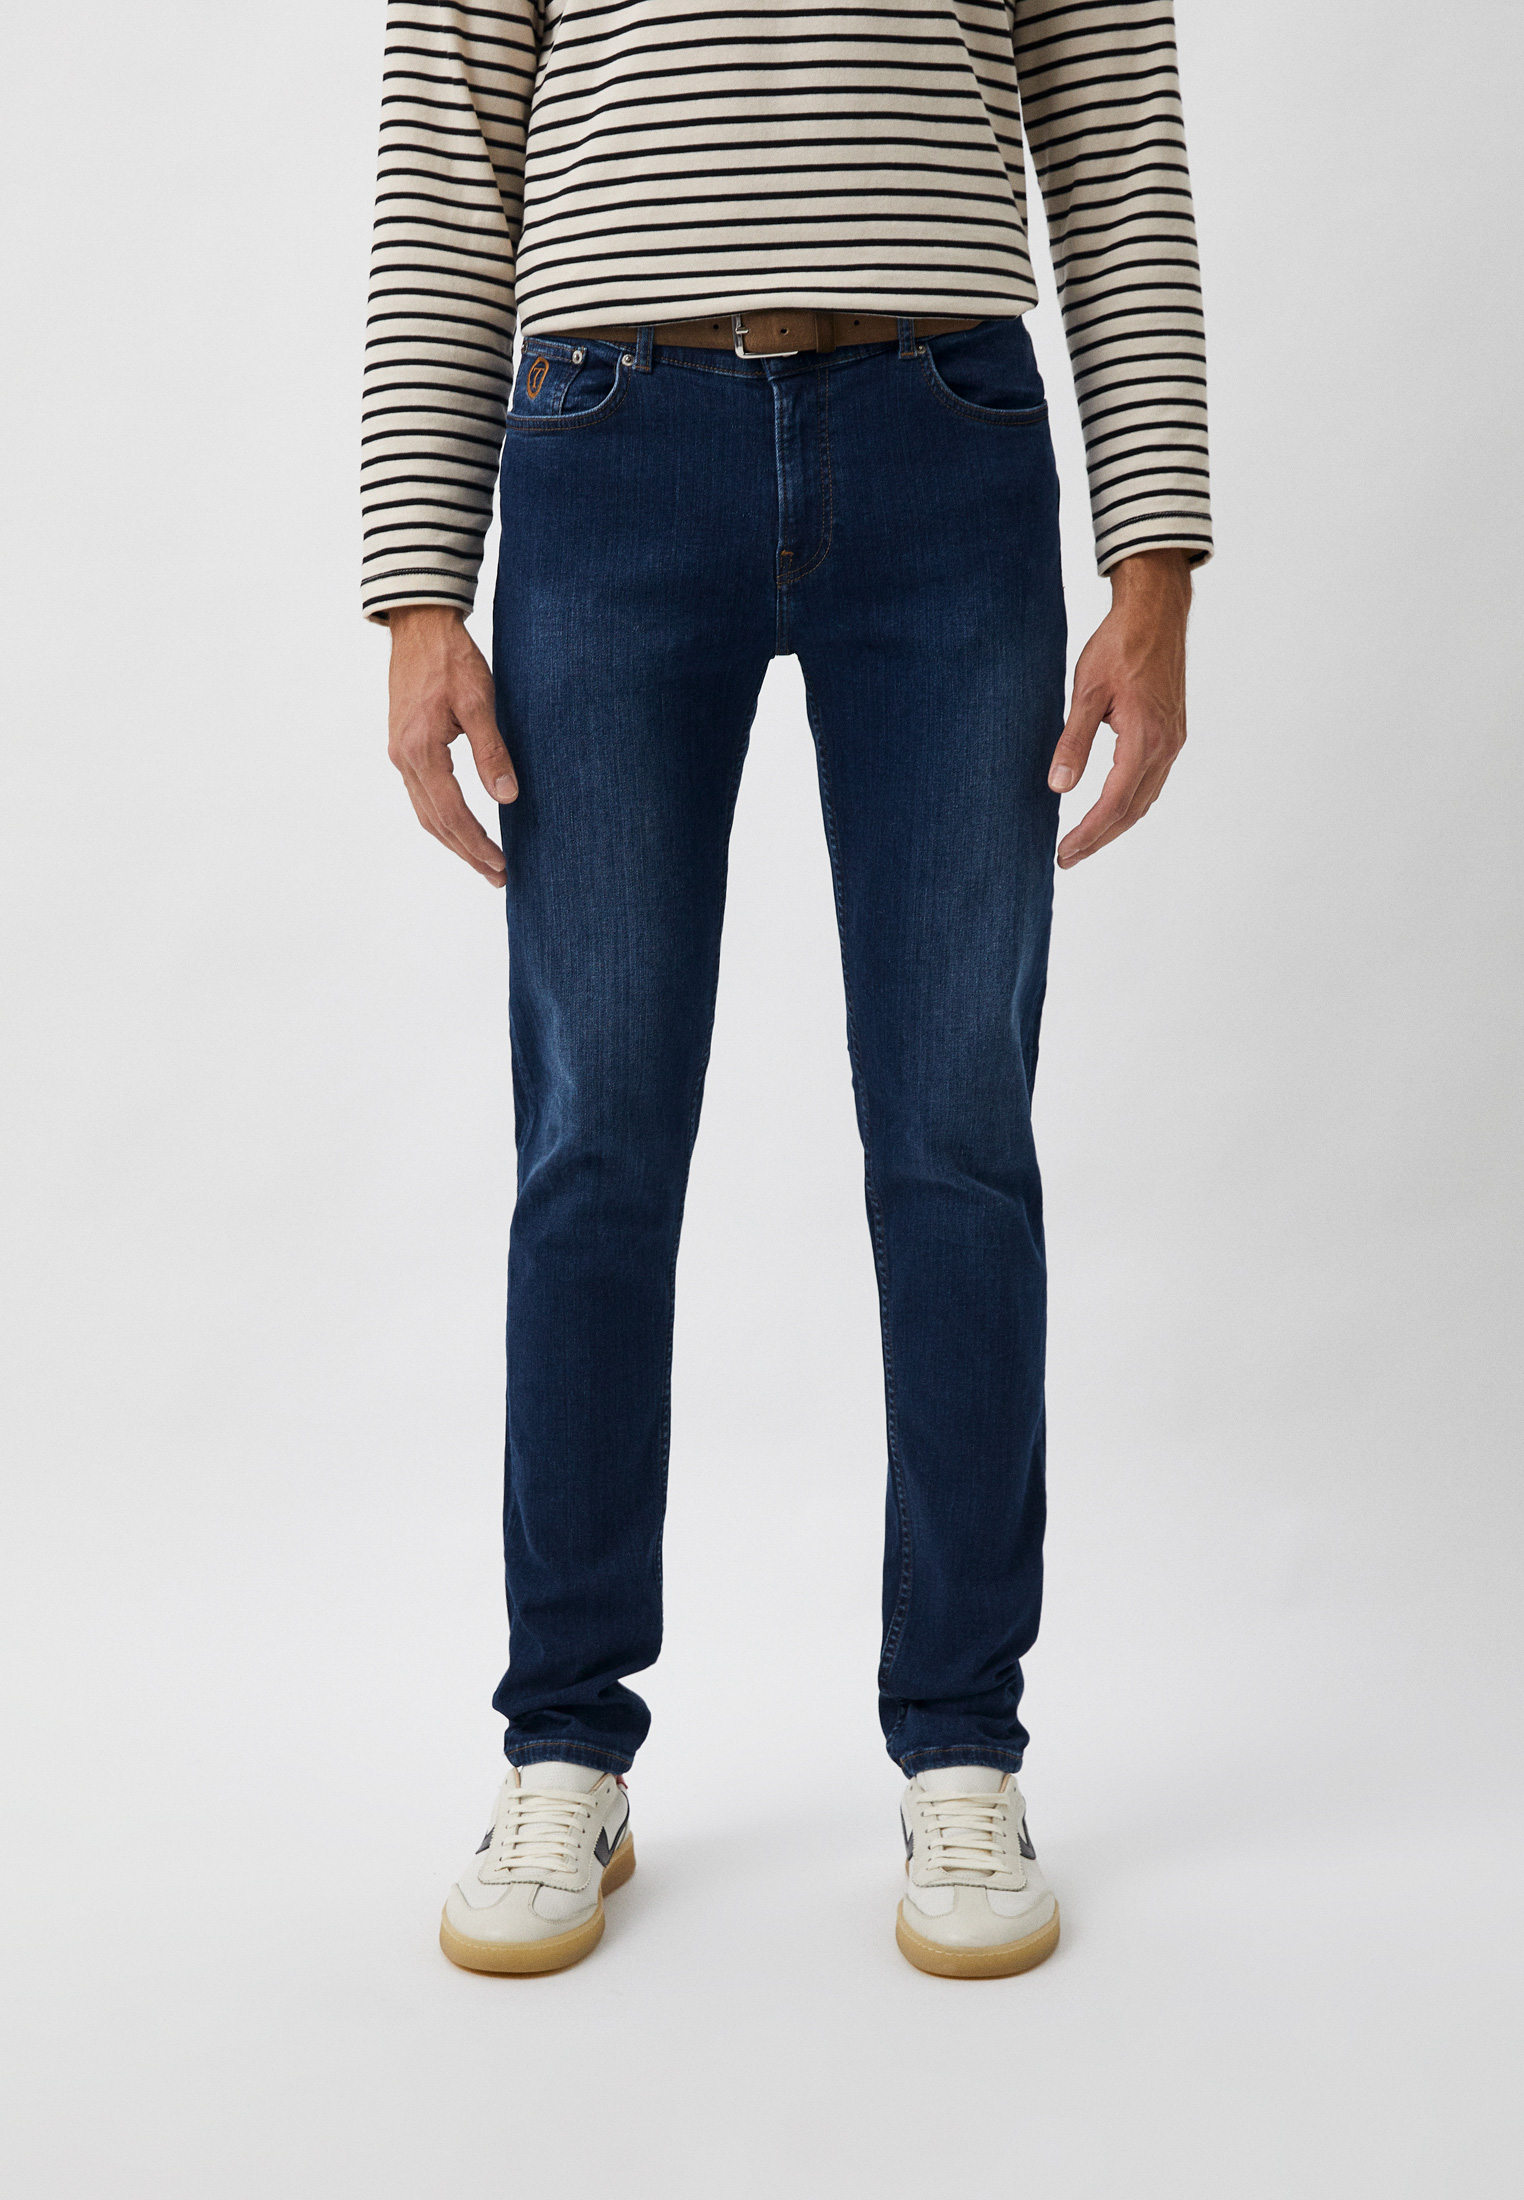 Мужские зауженные джинсы Trussardi (Труссарди) 52J00153-1T006328-C-002: изображение 1